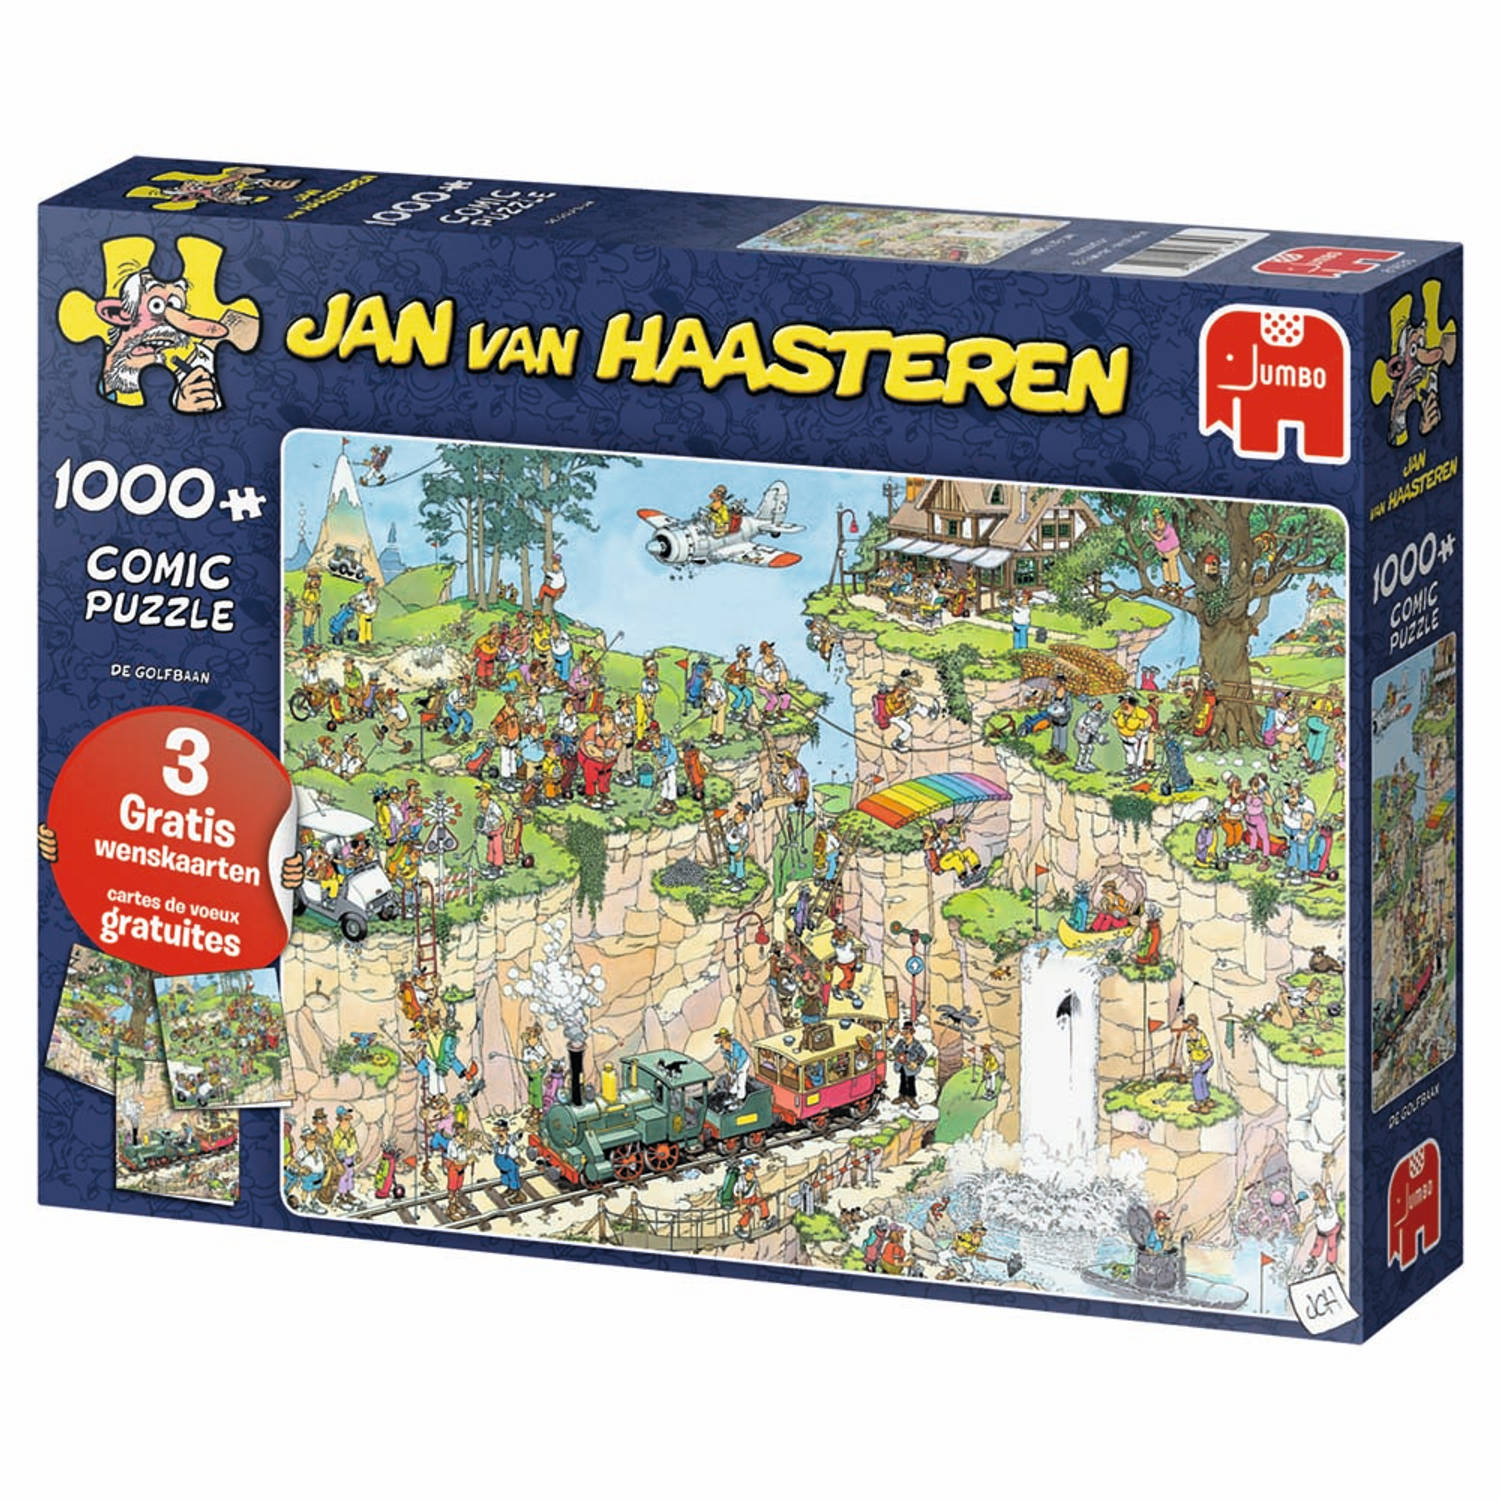 achterlijk persoon Beperken Kostuum Jan van Haasteren puzzel de golfbaan + 3 gratis wenskaarten - 1000 stukjes  | Blokker